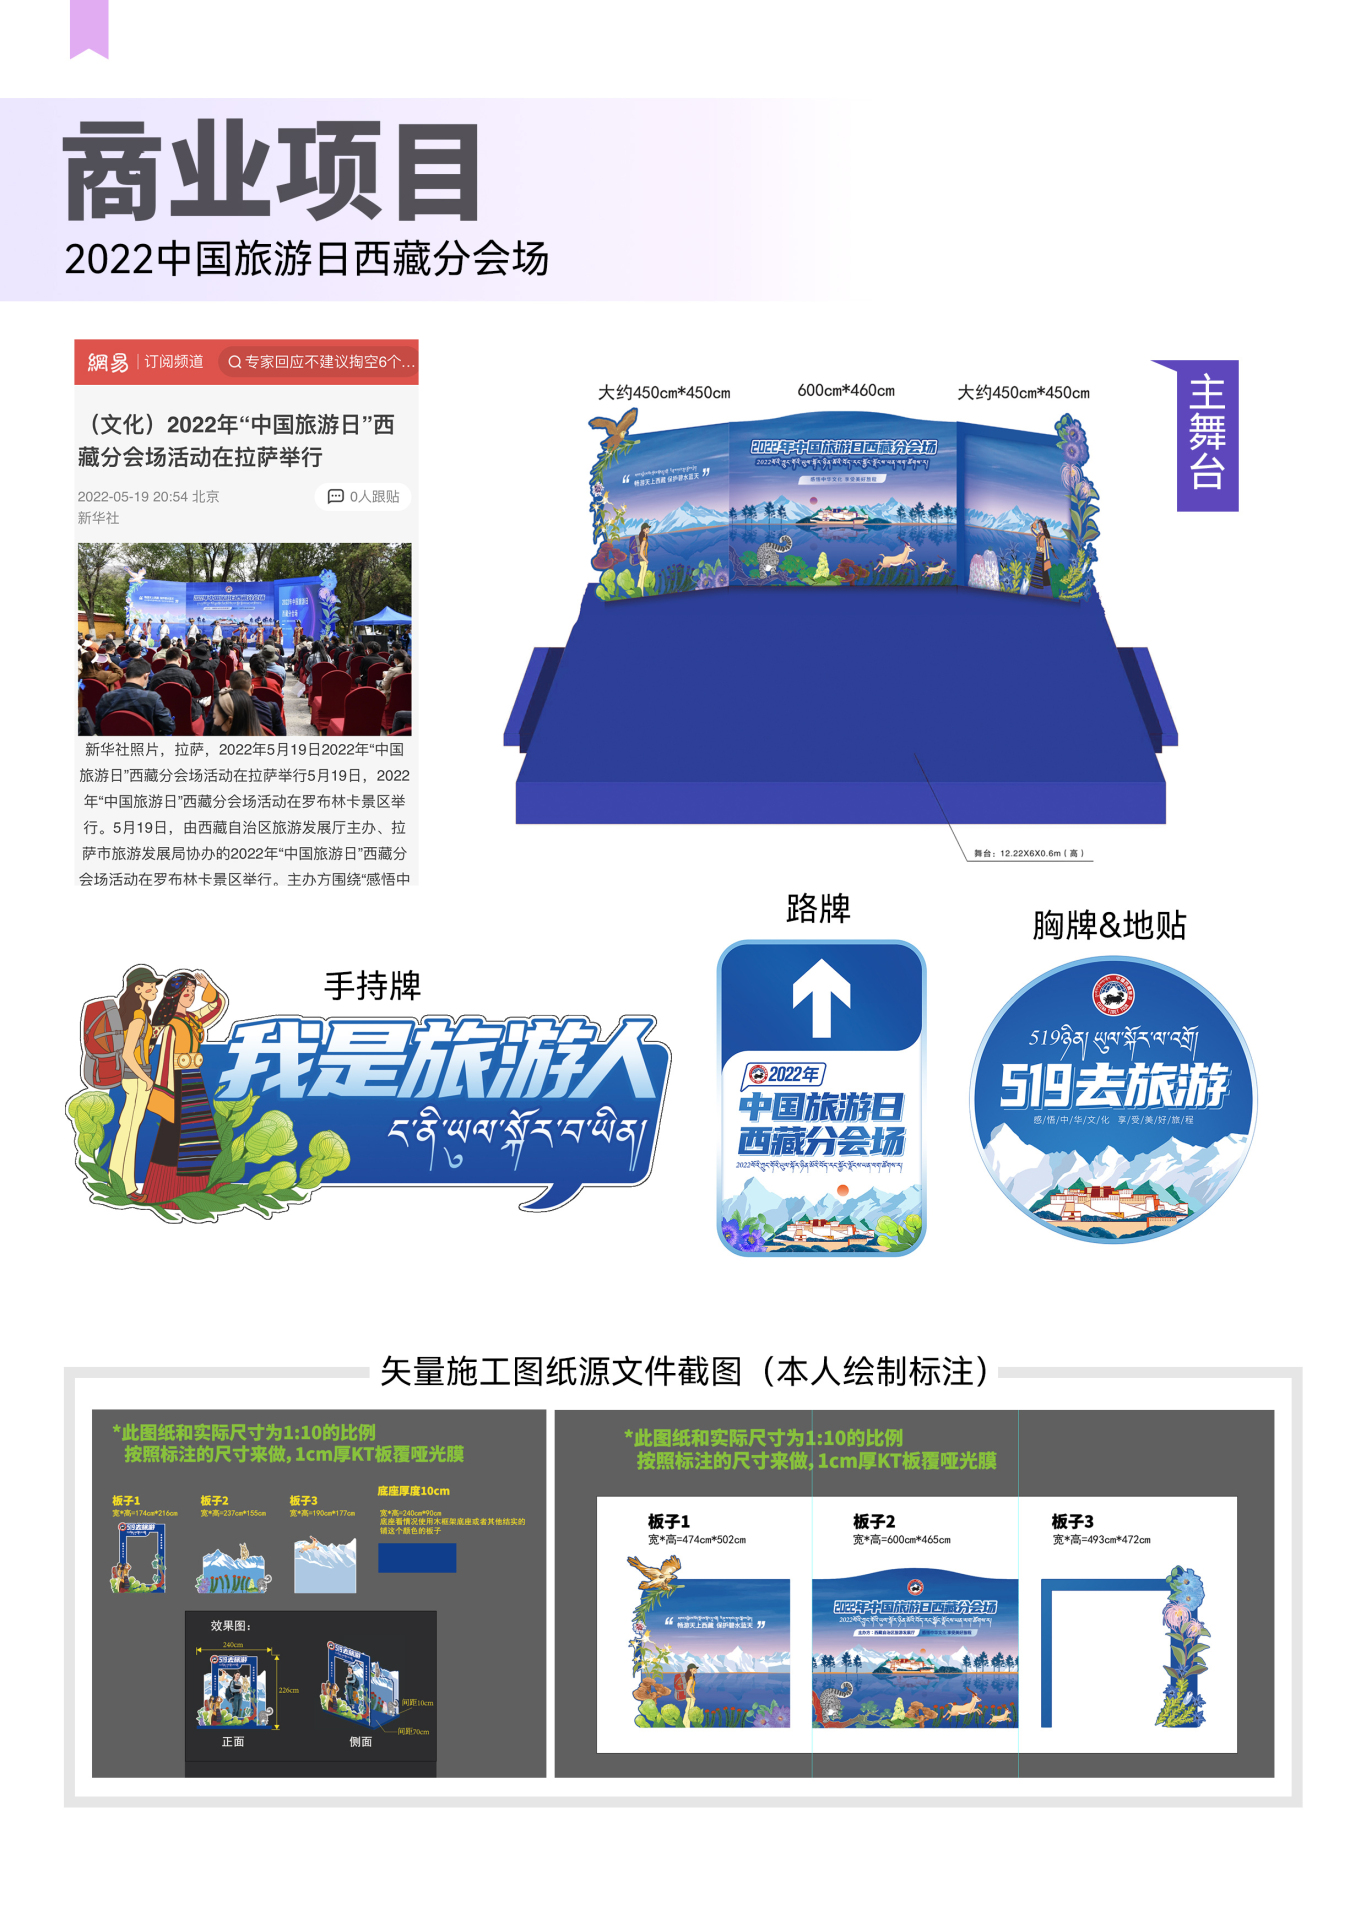 中国旅游日西藏分会场整体视觉设计图1